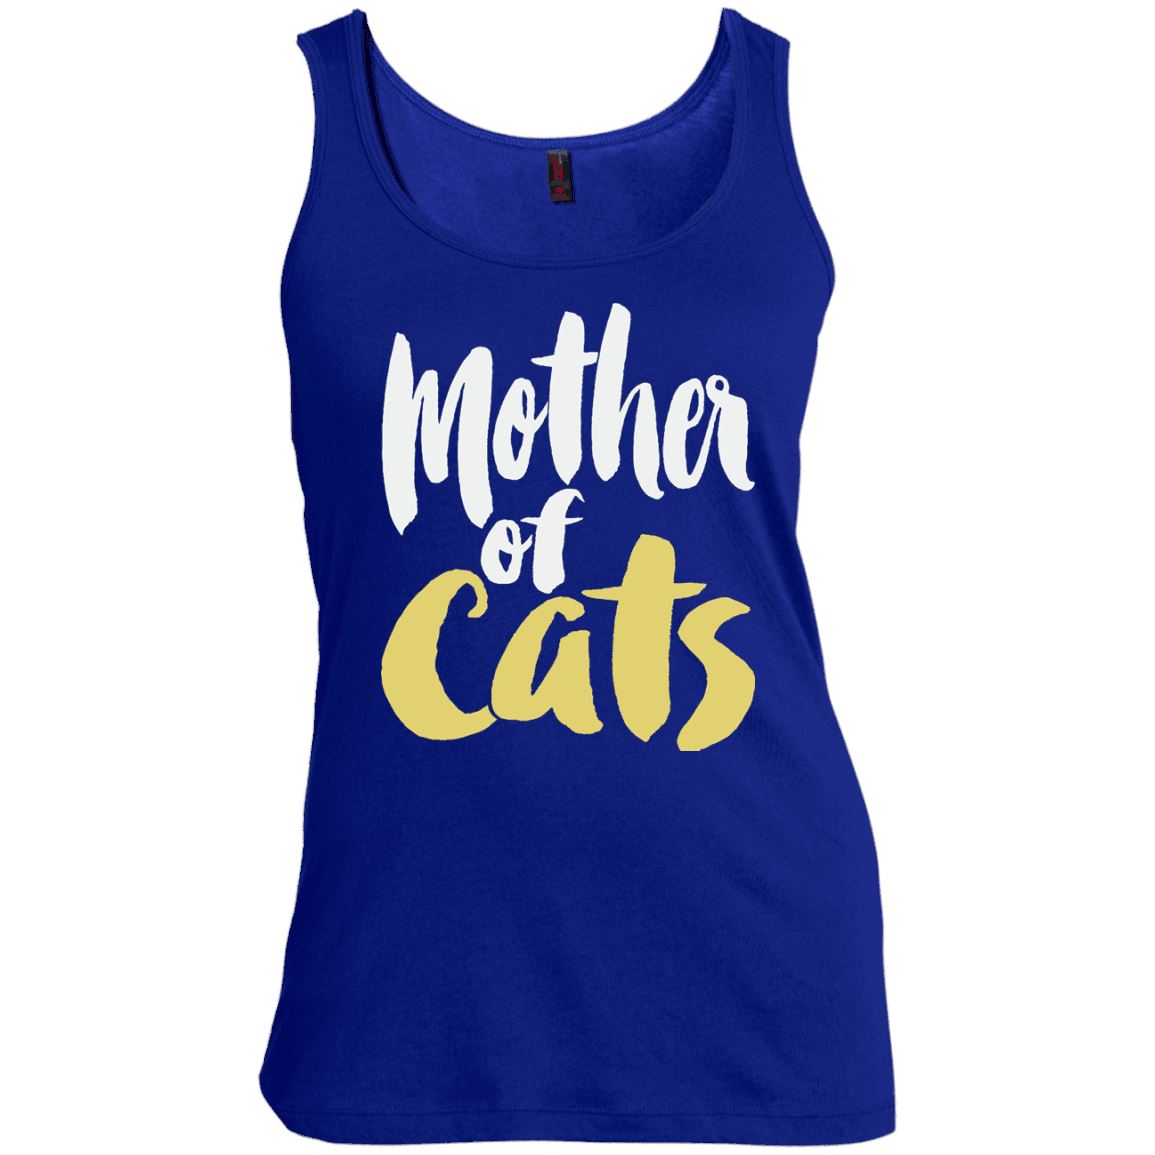 Cat Tee - Mother of Cats - CatsForLife